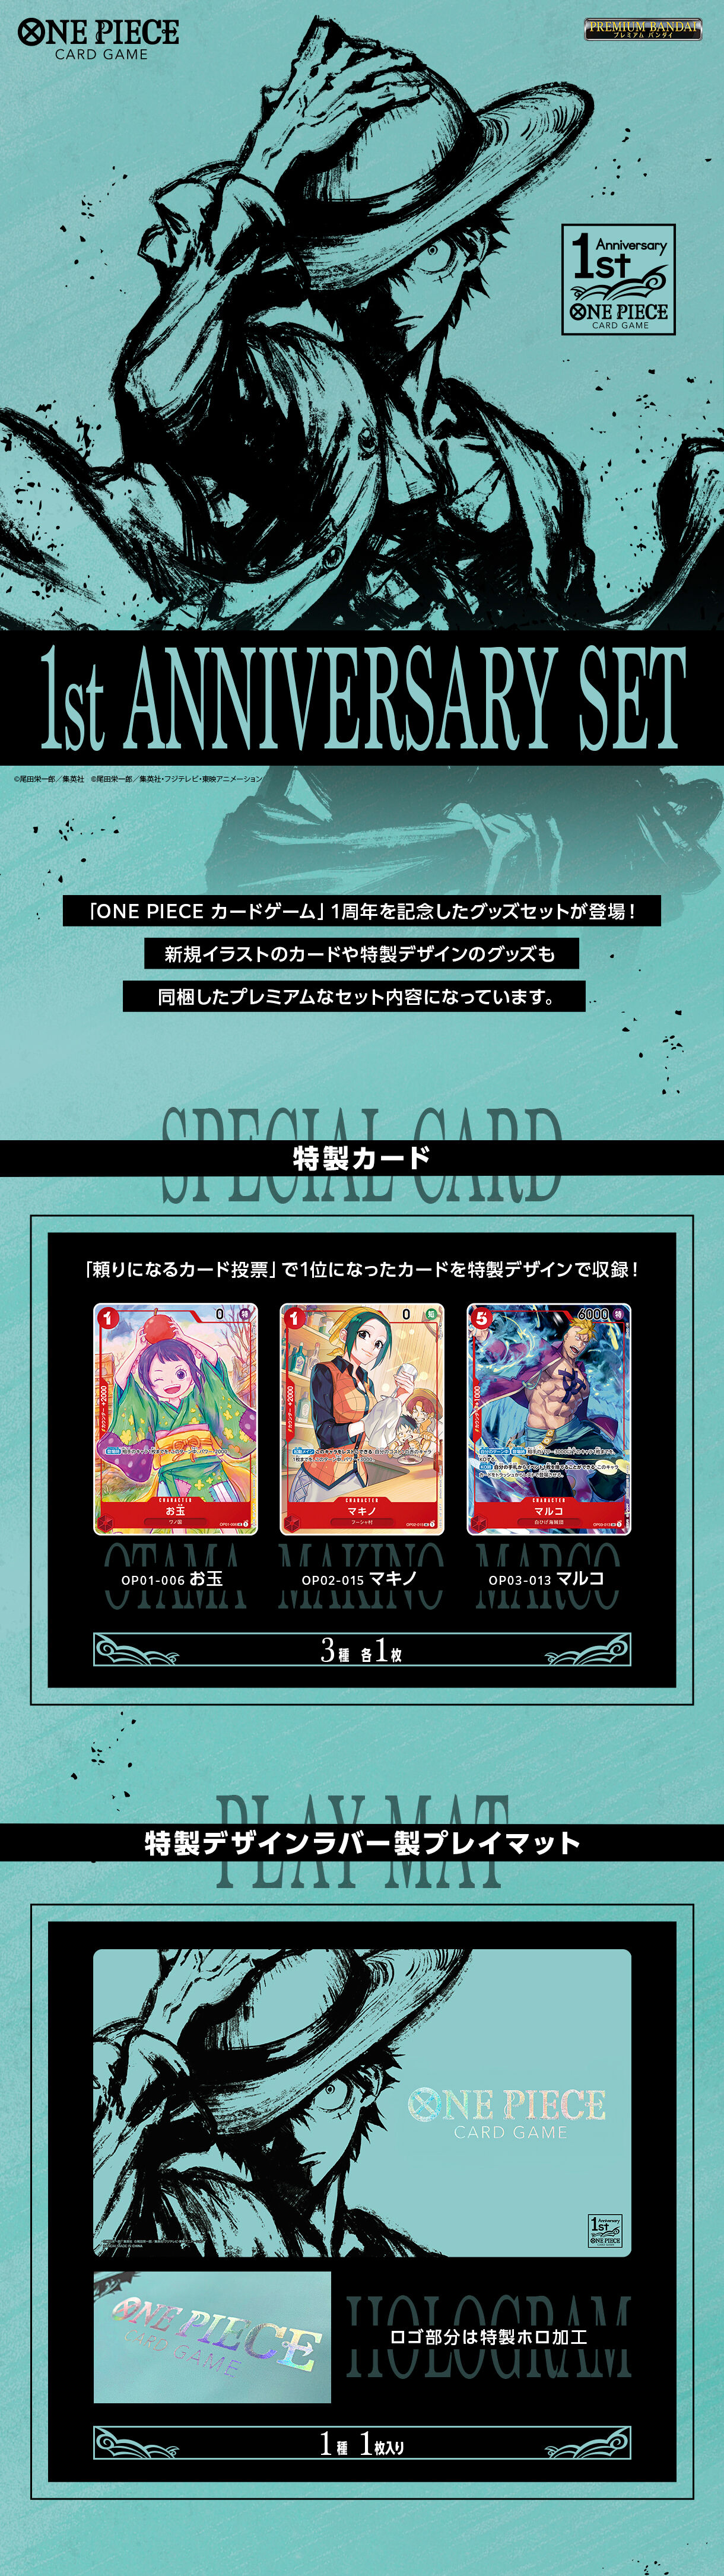 ワンピースカード 1st anniversary set 特典カード